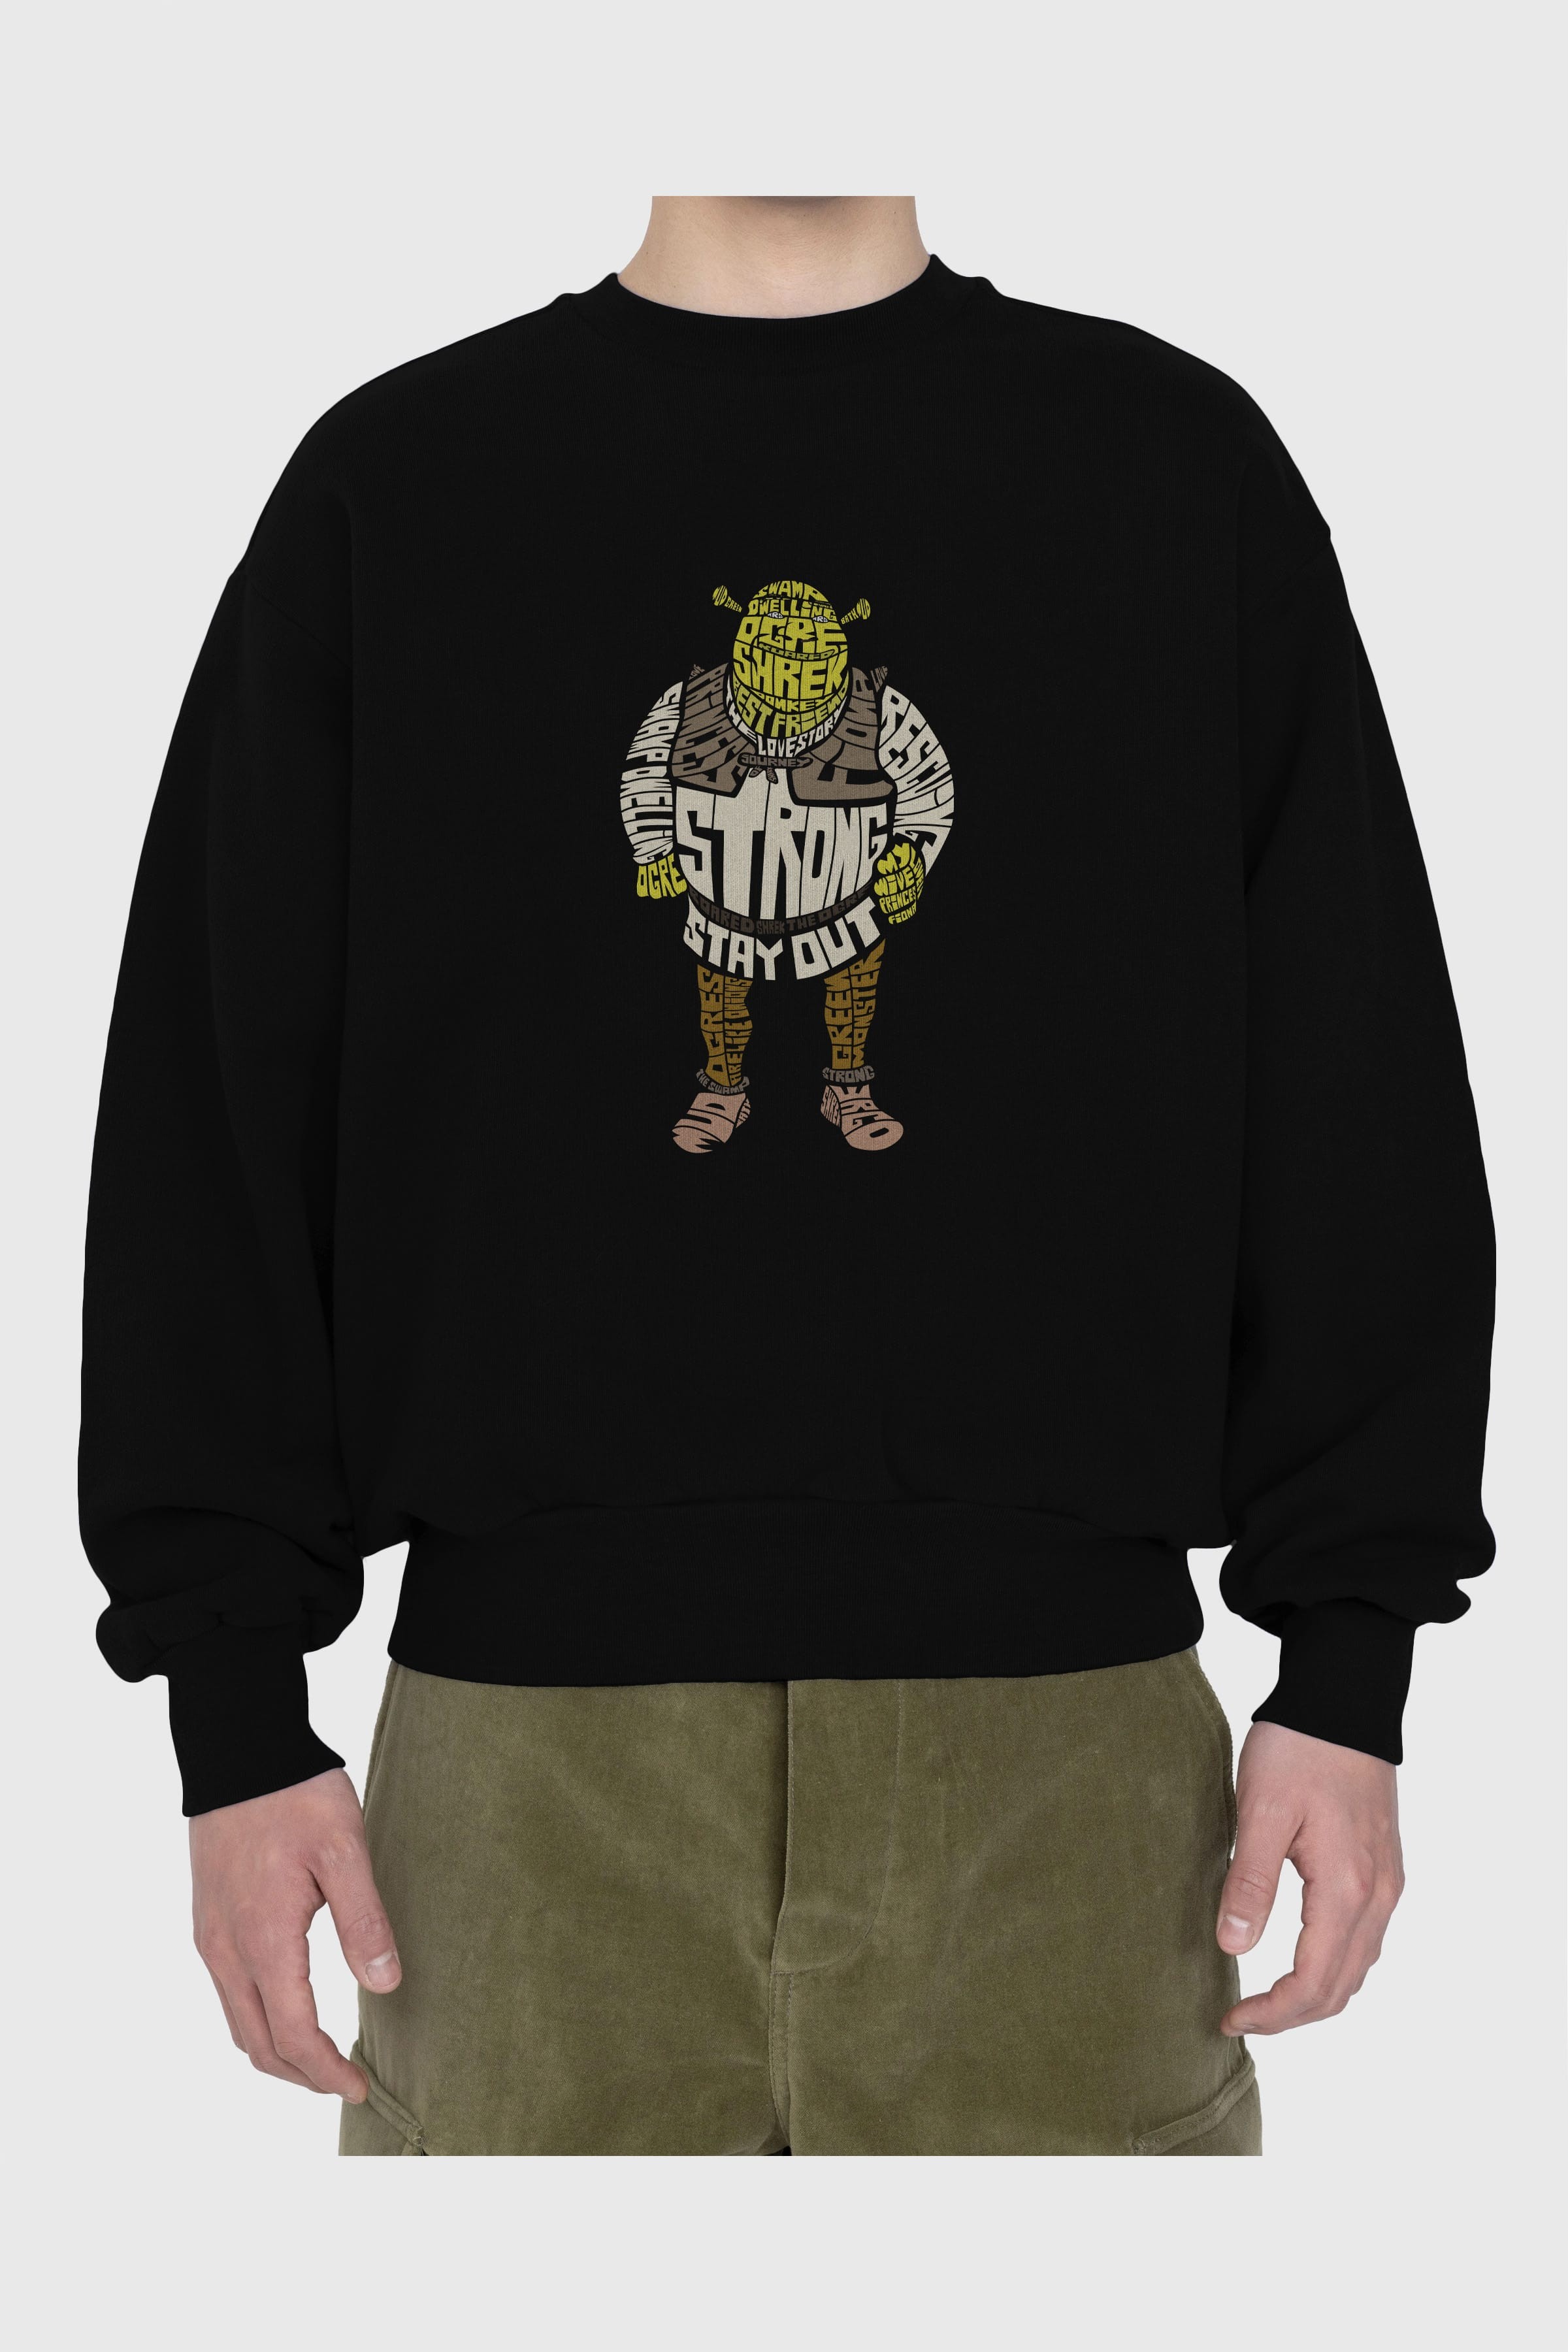 Shrek Ön Baskılı Oversize Sweatshirt Erkek Kadın Unisex